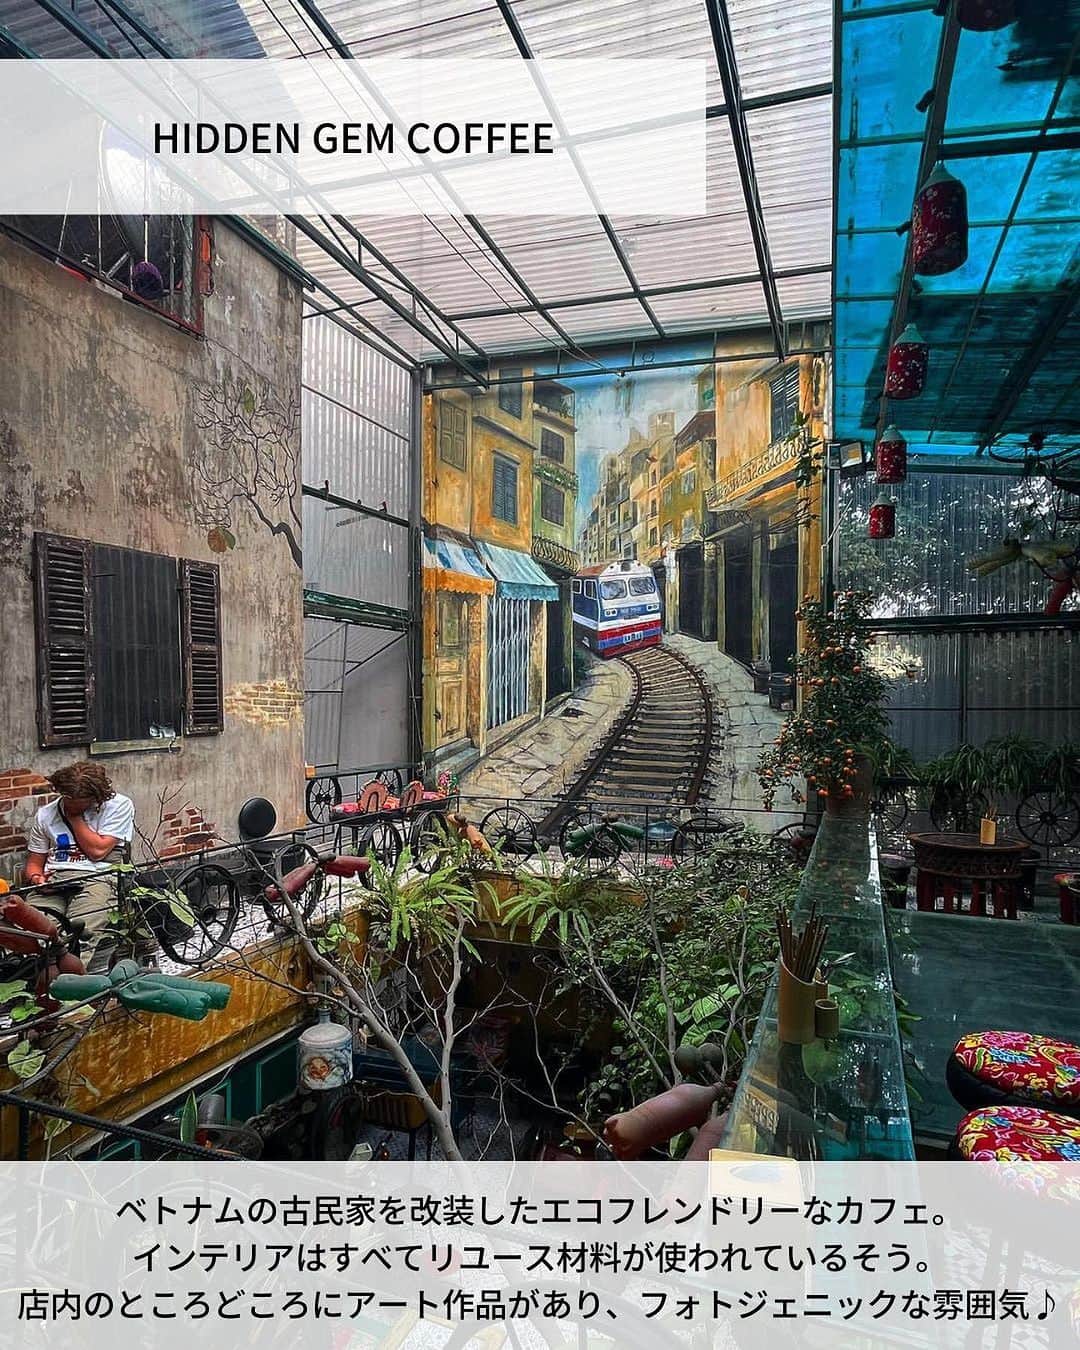 旅工房公式さんのインスタグラム写真 - (旅工房公式Instagram)「＼ベトナムのカフェ文化を楽しむ／  #ベトナム #ハノイ   こんにちは！☺  今回はアジアの旅行先から、人気のベトナム・ハノイからおしゃれなカフェを大特集しました！  『ハノイカフェ 一人旅』で検索すると、住所情報を含めたもっと詳しい旅pocket記事があります🎵 ぜひそちらもチェックしてみてください🥰  旅行先の参考にぜひしてみてください＼(^o^)／ 💚   ▽お写真ありがとうございます❣   📍HIDDEN GEM COFFEE  @gram0_0snoopy さん ベトナムの古民家を改装したエコフレンドリーなカフェ。 インテリアはすべてリユース材料が使われているそう。  店内のところどころにアート作品があり、フォトジェニックな雰囲気♪  【住所】 1 Hàng Mắm, Phố cổ Hà Nội, Hoàn Kiếm, Hà Nội, ベトナム  📍THE NOTE COFFEE @ayu_trip さん カラフルな付箋で埋め尽くされている、おもしろかわいいカフェ！  店内に貼られている付箋は、お店に来たお客さんも書けるので自分でメッセージを書いて好きな場所に貼ることもできますよ◎  【住所】 64 P. Lương Văn Can, Hàng Trống, Hoàn Kiếm, Hà Nội, ベトナム  📍LAIKA CAFÉ  @masako_vietnam さん ハノイの旧市街にある、人気のカフェチェーン店。  窓際やテラス席では旧市街の街並みを見渡しながらのカフェタイムを満喫できます◎  【住所】 1 P. Đinh Tiên Hoàng, Hàng Trống, Hoàn Kiếm, Hà Nội, ベトナム  📍Café Pho Co  @h_k_hanoi さん 100年以上前のベトナムの伝統的な民家を利用したレトロな雰囲気が魅力のスポット！  涼しい時期であれば、自然の風を感じながらホアンキエム湖を見渡せるテラス席がおすすめ♪  【住所】 11 P. Hàng Gai, Hàng Trống, Hoàn Kiếm, Hà Nội 10000 ベトナム  📍Cau Go Vietnamese Cuisine @minako.hanoi さん 絶景を眺めながらカフェタイムをすごしたいならここ！  広い窓からはホアンキエム湖が一望できます◎  ベトナムの定番スイーツ蓮の実とロンガンのチェーがおすすめメニューです！  【住所】 7 P. Đinh Tiên Hoàng, Hàng Trống, Hoàn Kiếm, Hà Nội, ベトナム  📍NOLA cafe @atsushi_days さん 民家の建物をそのまま使ったお家のようなカフェ。  中庭の吹き抜けをぐるっと囲むように部屋があり、部屋ごとにインテリアが違うので自分の好きな場所を探してみてください♪  【住所】 in the alley, 89 P. Mã Mây, Hàng Buồm, Hoàn Kiếm, Hà Nội 100000 ベトナム  この記事を読んで、ぜひ次回の海外旅行の参考にしてみて下さい＼(^o^)／💛   �   #旅工房 #ベトナム女子旅 #ベトナム旅行 #ハノイ旅行 #HIDDENGEMCOFFEE #ベトナムカフェ巡り #カフェ巡り #THENOTECOFFEE #LAIKACAFÉ #CaféPhoCo #CauGoVietnamese Cuisine #NOLAcafe #ベトナムグルメ #ハノイグルメ #ベトナムカフェ #ハノイカフェ #ベトナムスイーツ #海外旅行好きと繋がりたい #海外旅行 #旅行好きな人と繋がりたい #海外旅行準備 #旅好き女子 #海外旅行行きたい #海外旅行計画 #旅スタグラム #海外一人旅 #旅の記録」7月5日 12時32分 - tabikobo